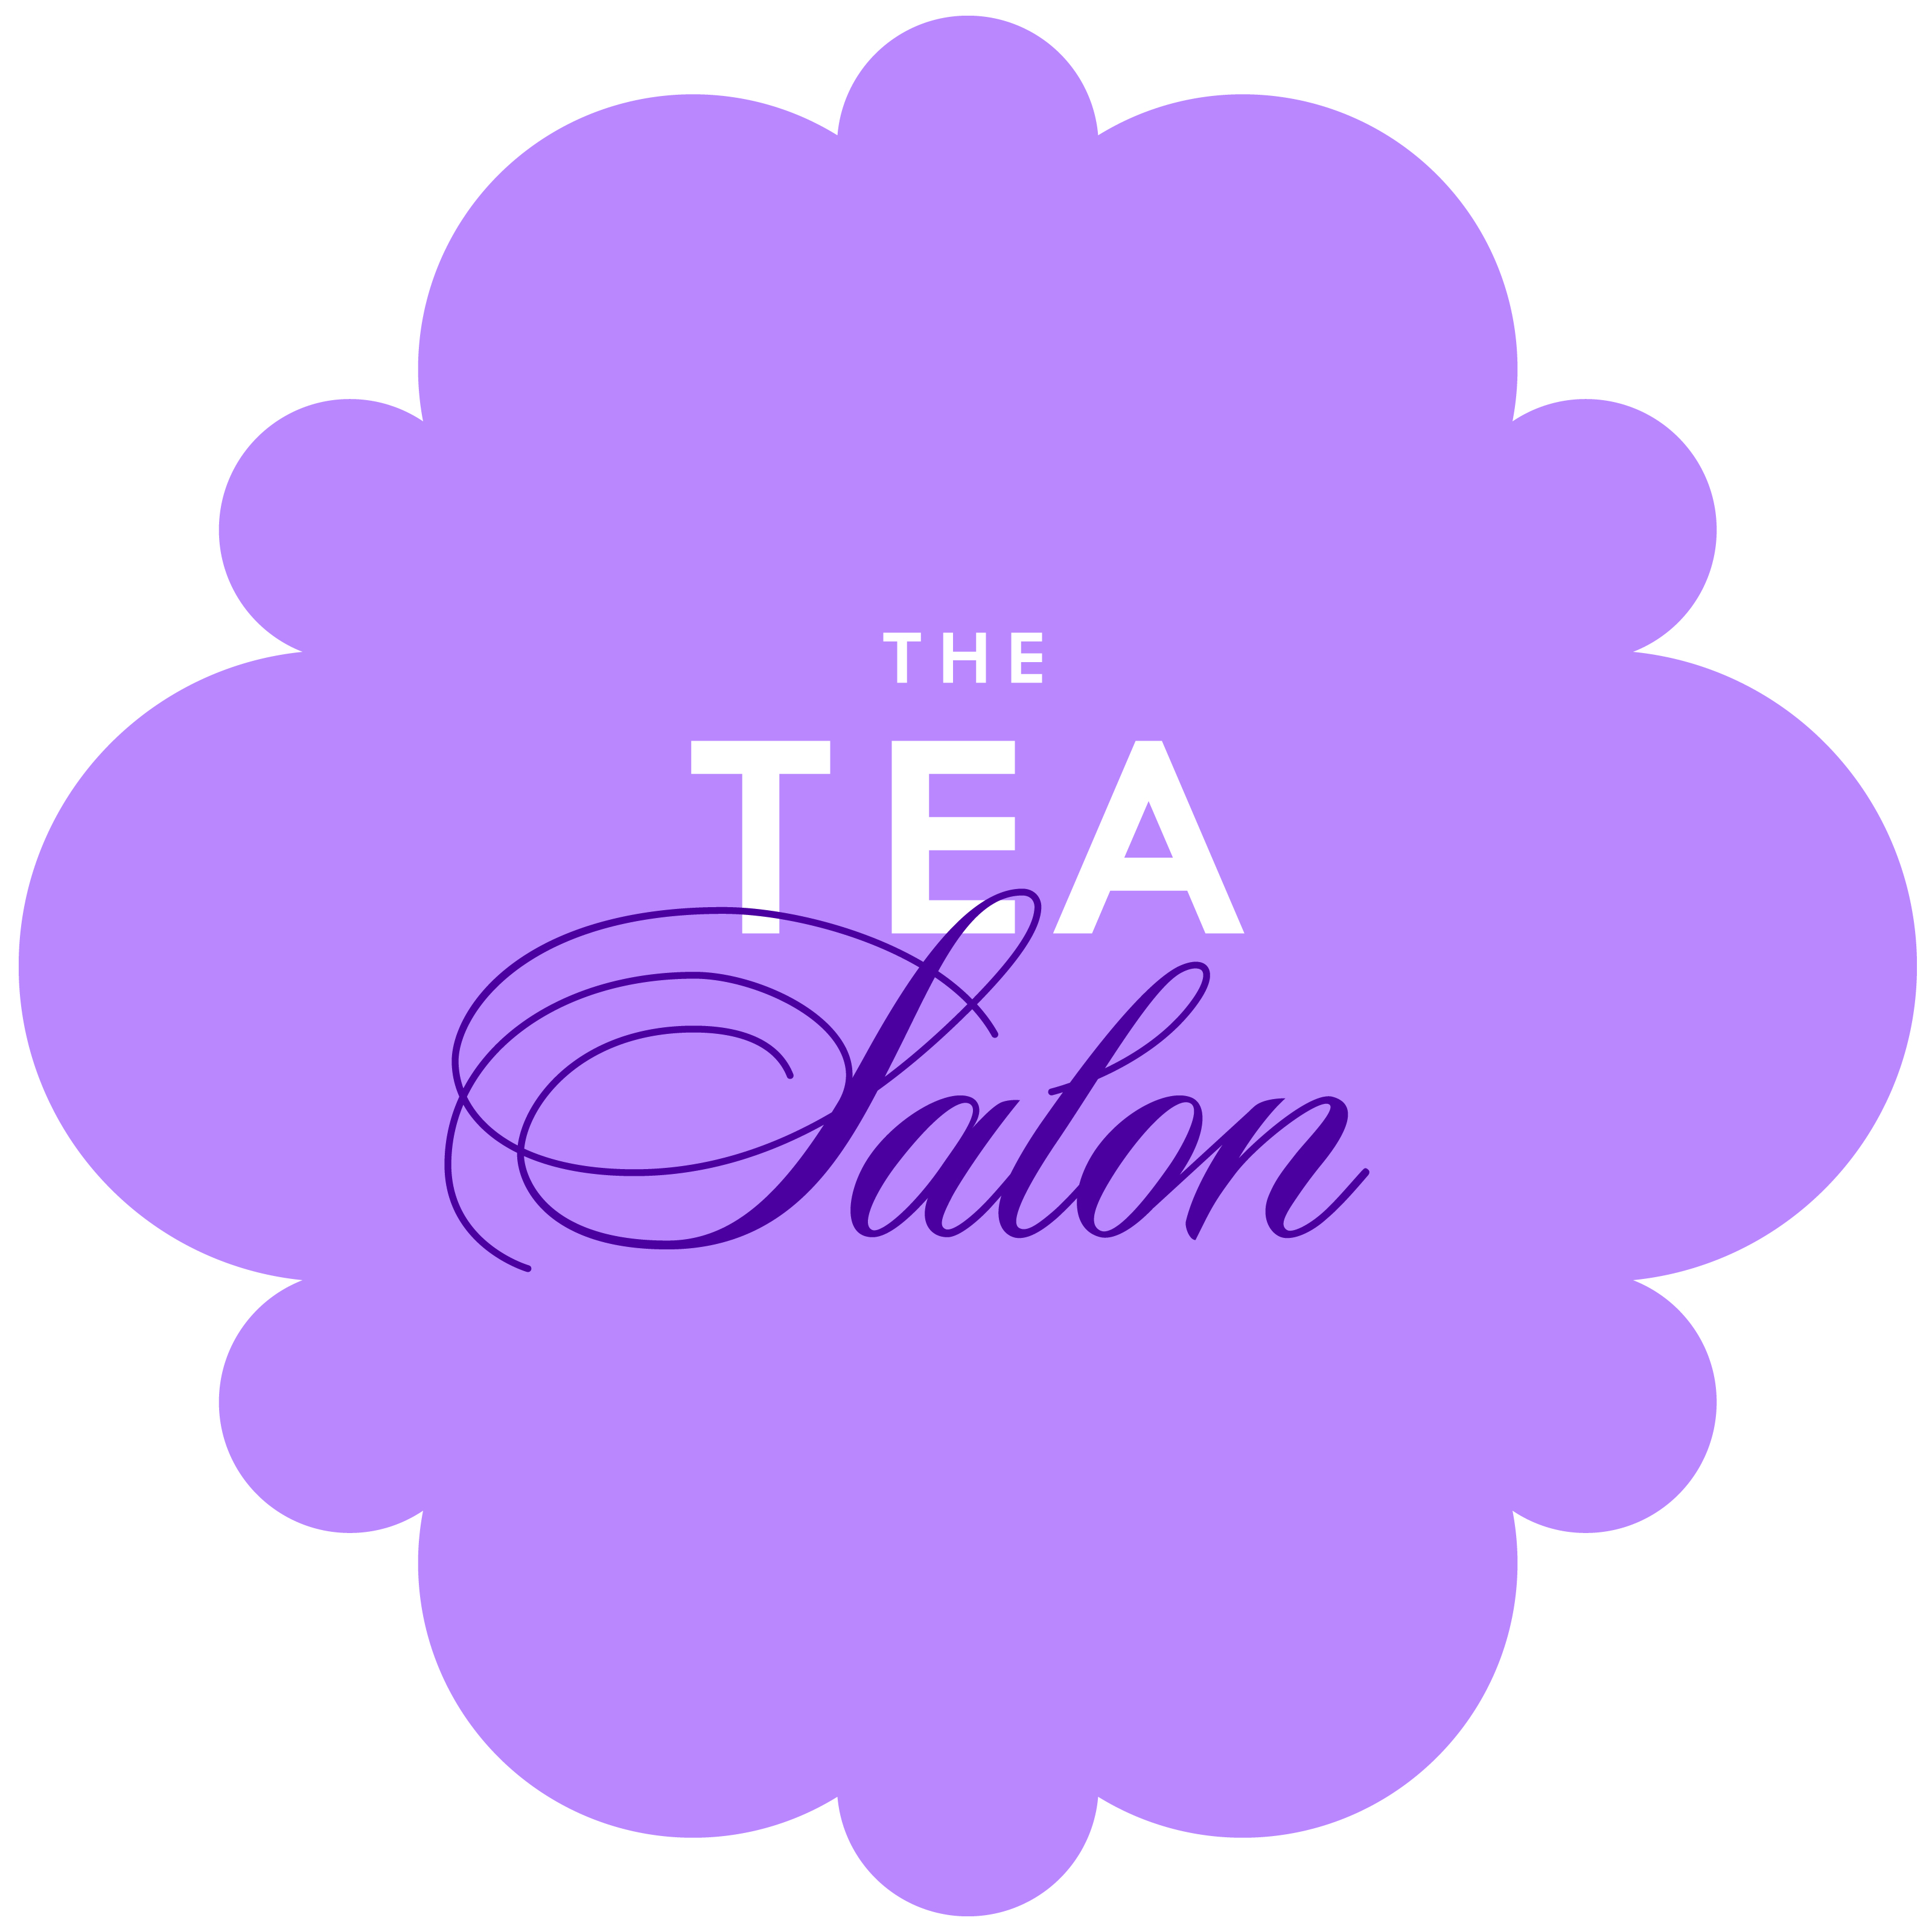 The Tea Salon